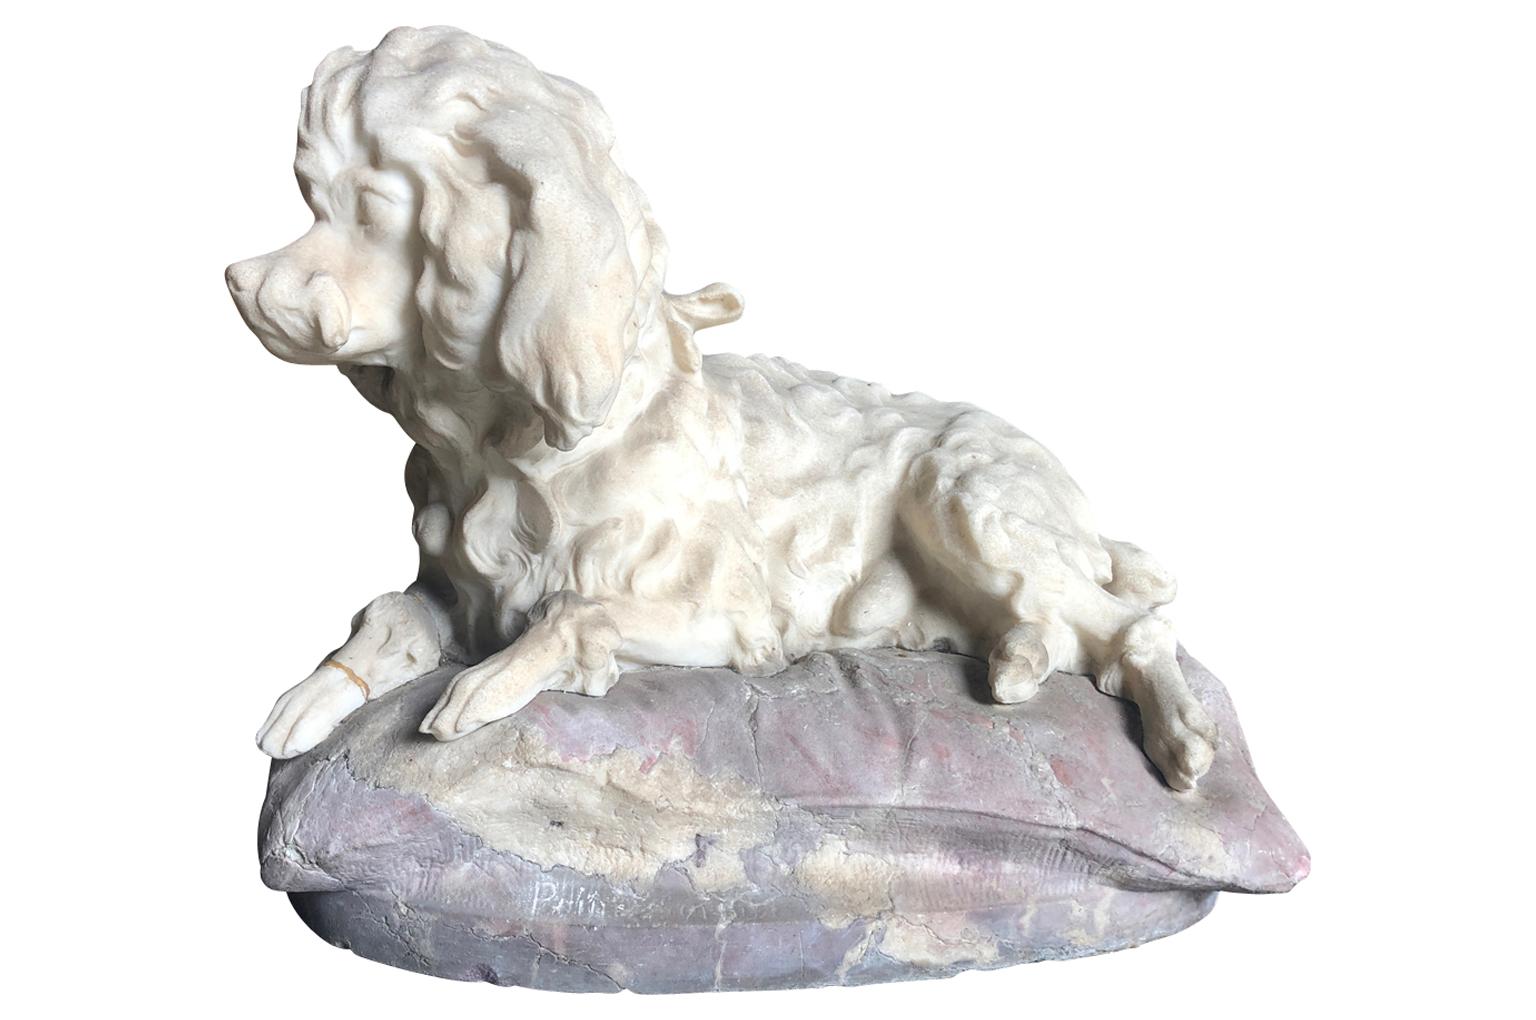 Eine sehr liebenswerte Statue eines wertvollen Hundes aus dem 19. Jahrhundert:: der sich auf seinem Kissen ausruht:: aus der Region Venetien in Italien. Prächtig geschnitzt aus Cararra-Marmor. Ein wunderbares Akzentstück.